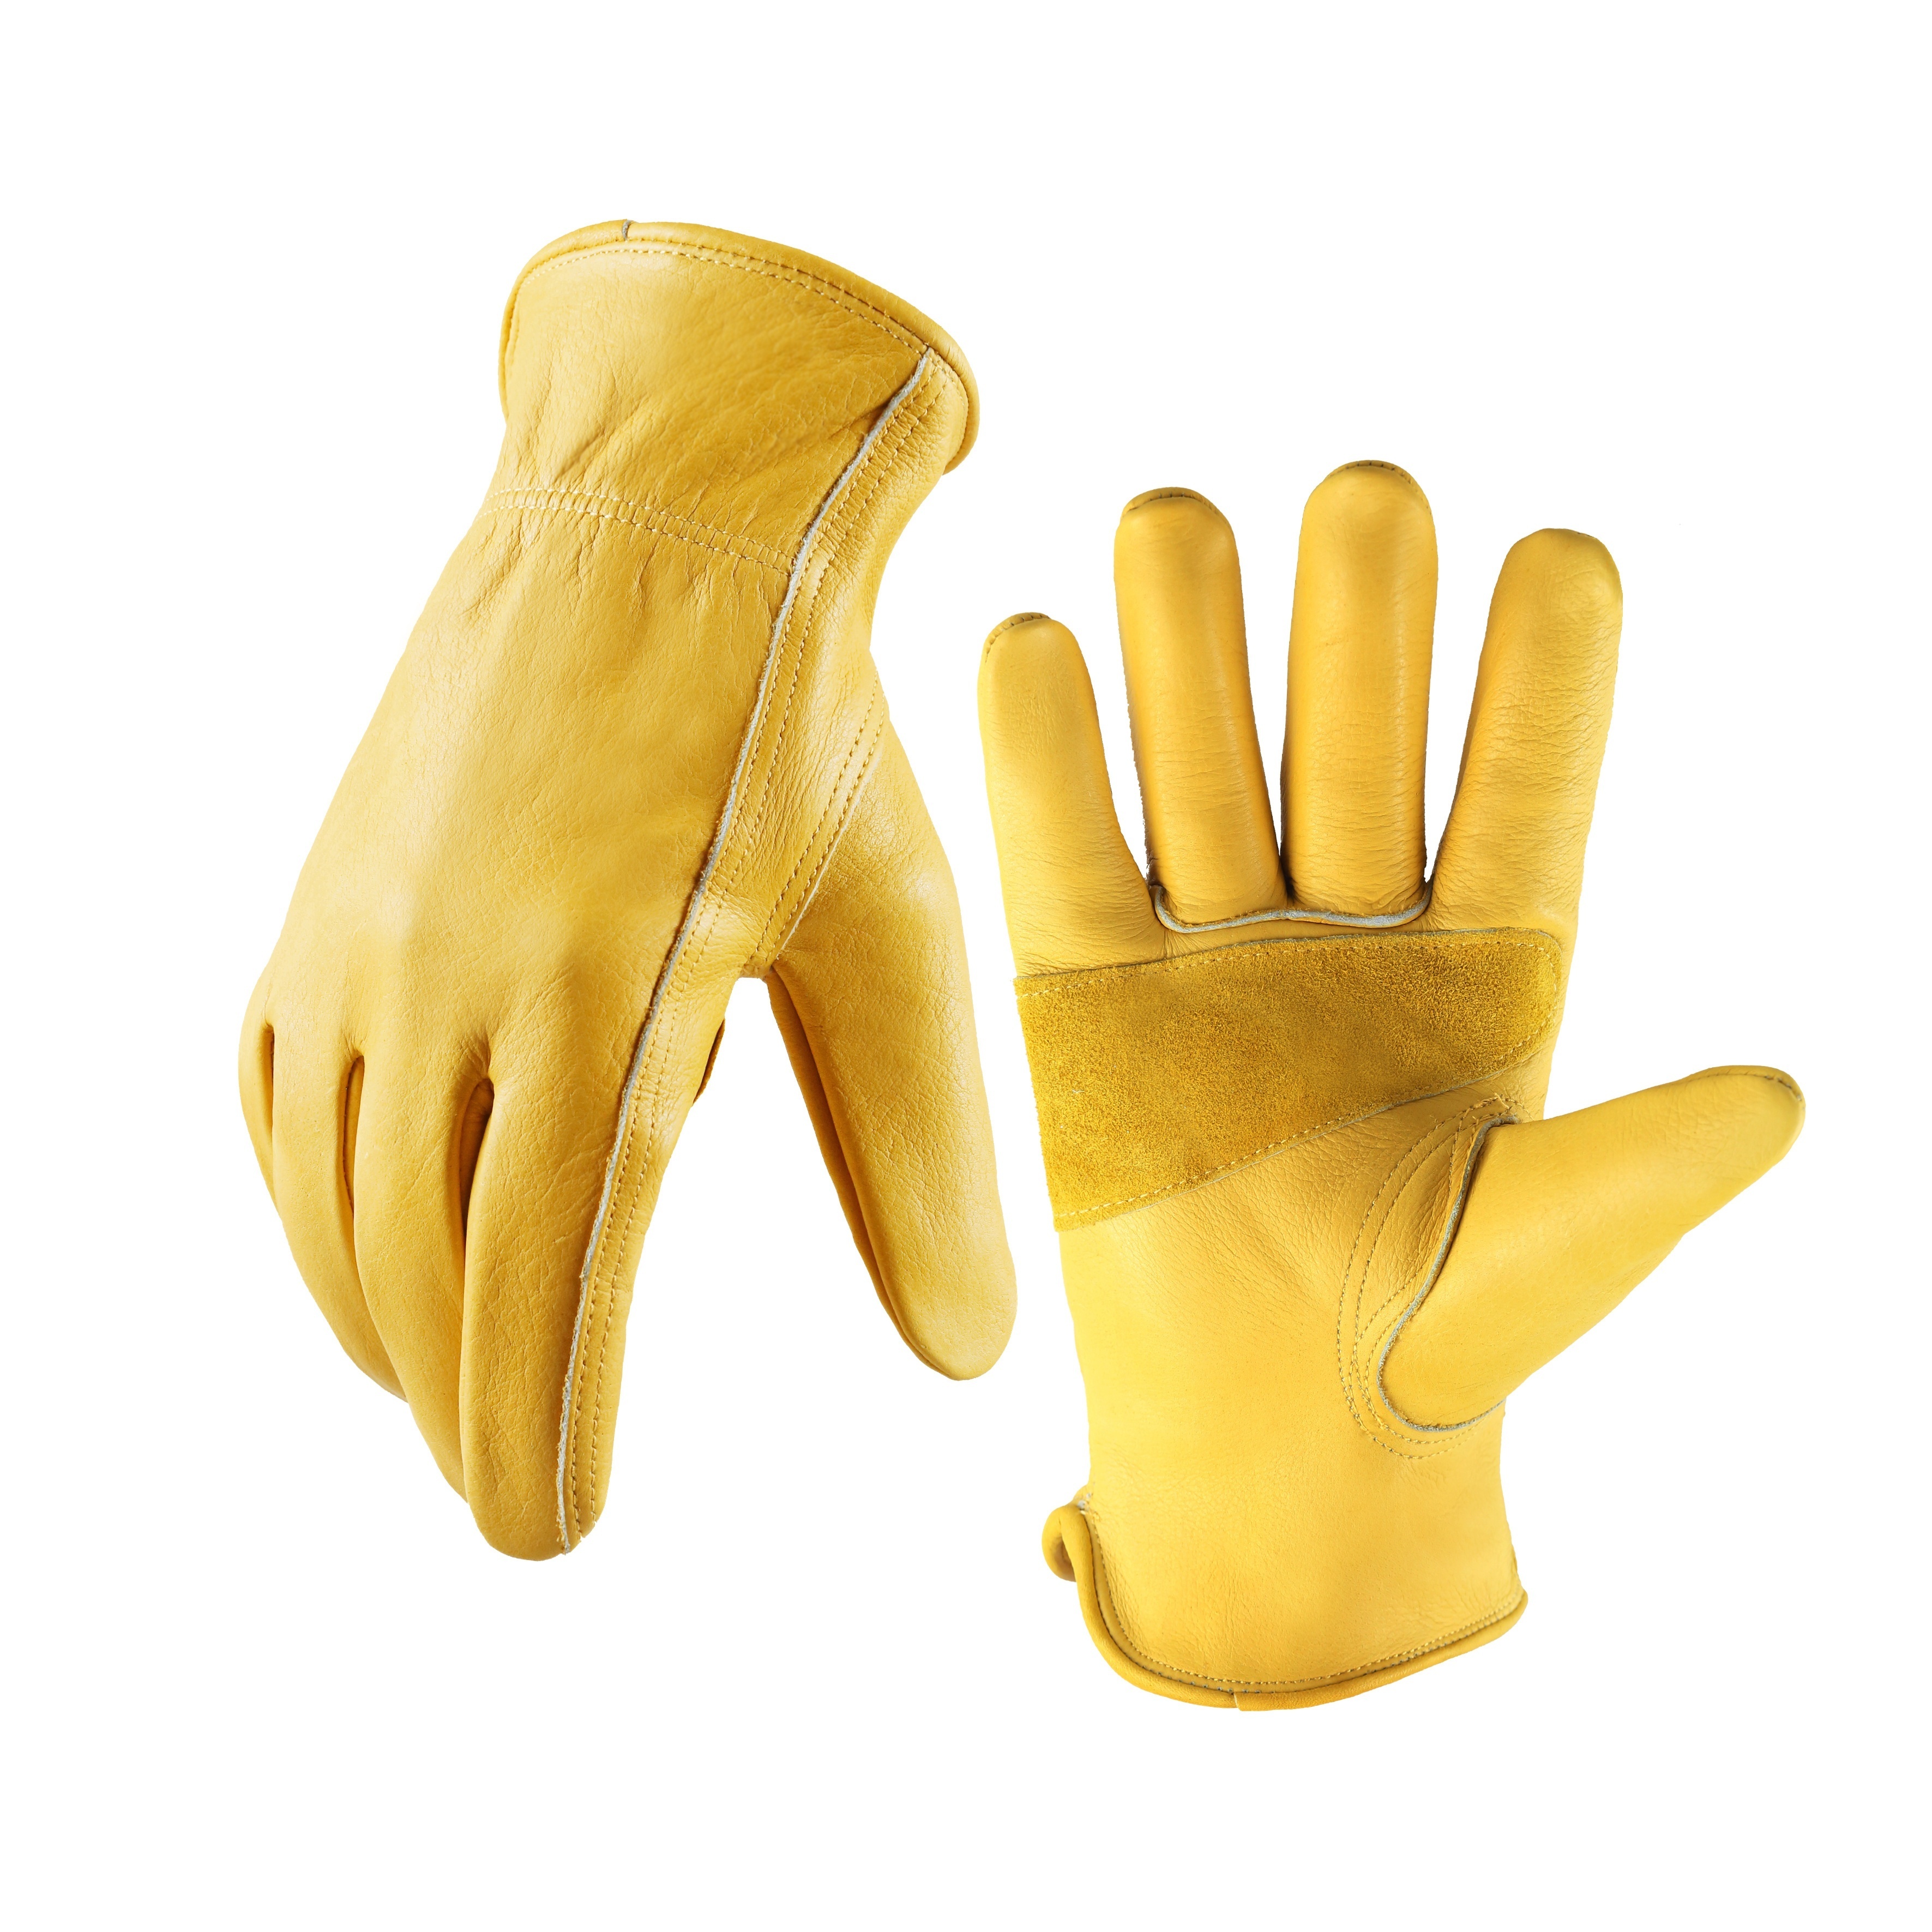 Flexible Winter Work Gloves For Men And Women - Temu Australia